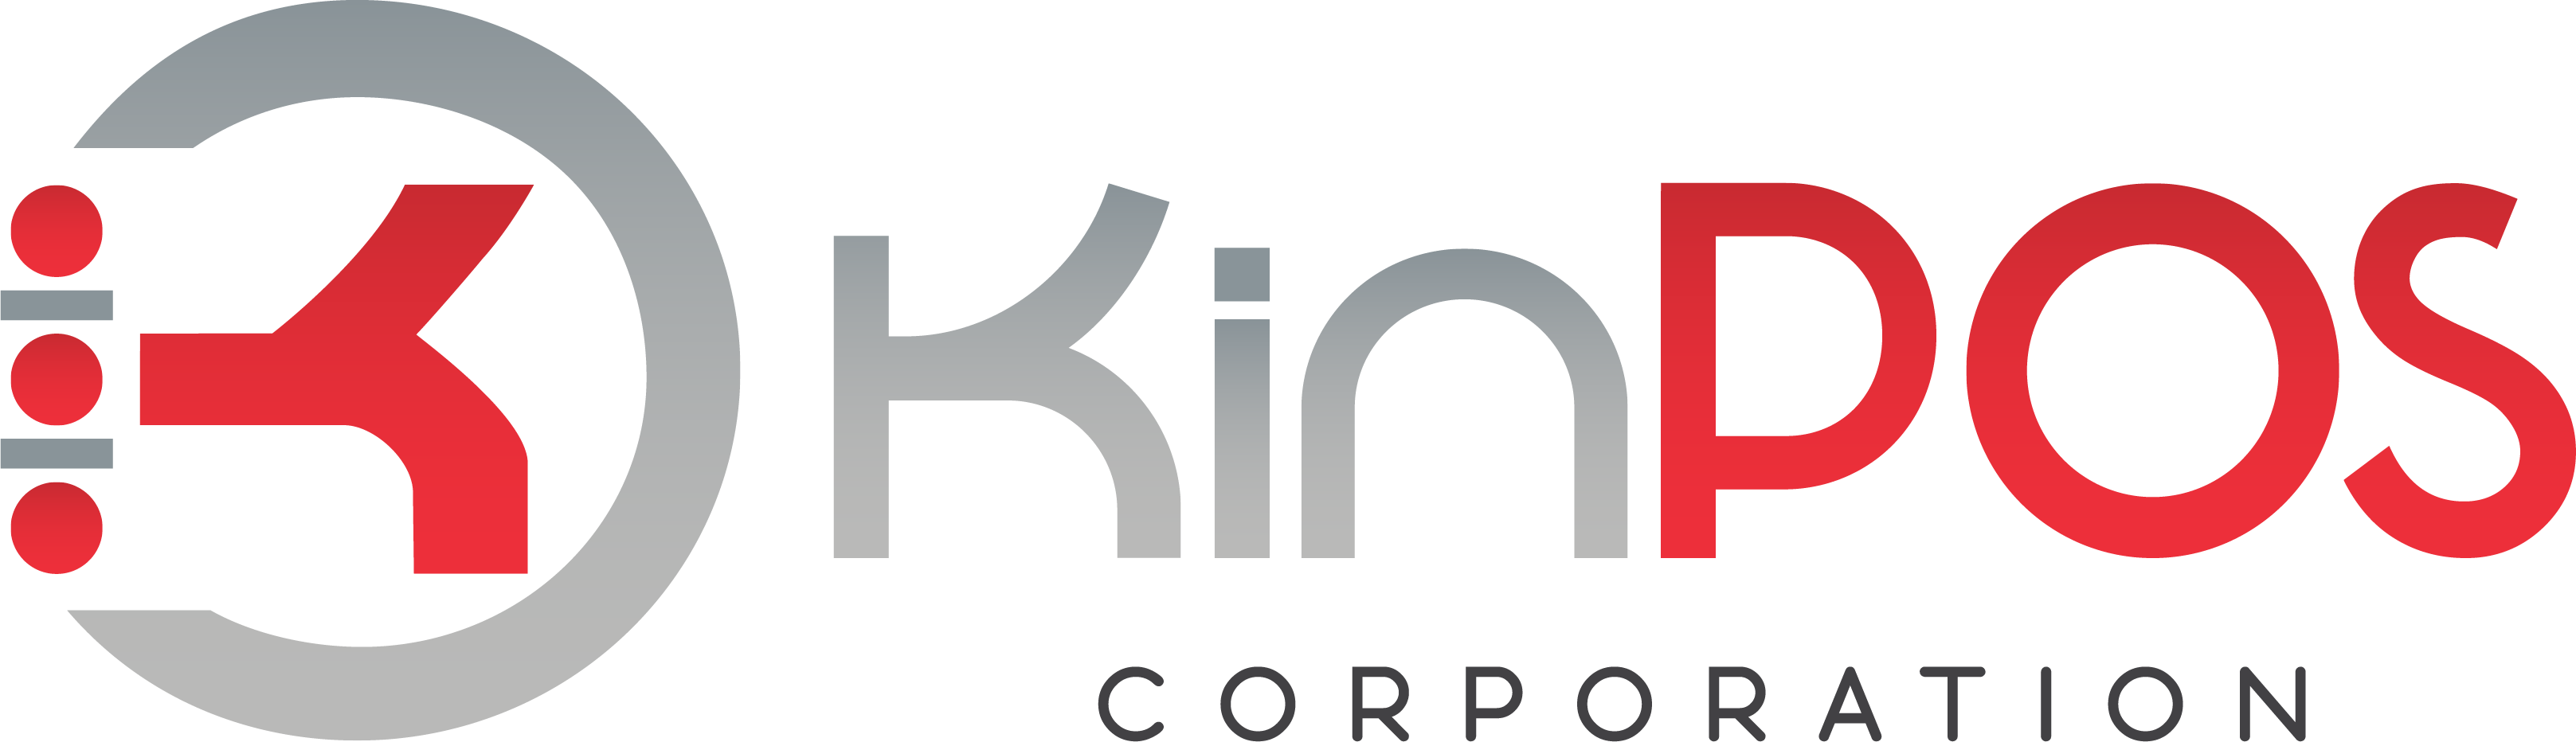 KinPOS Corporation Company Logo